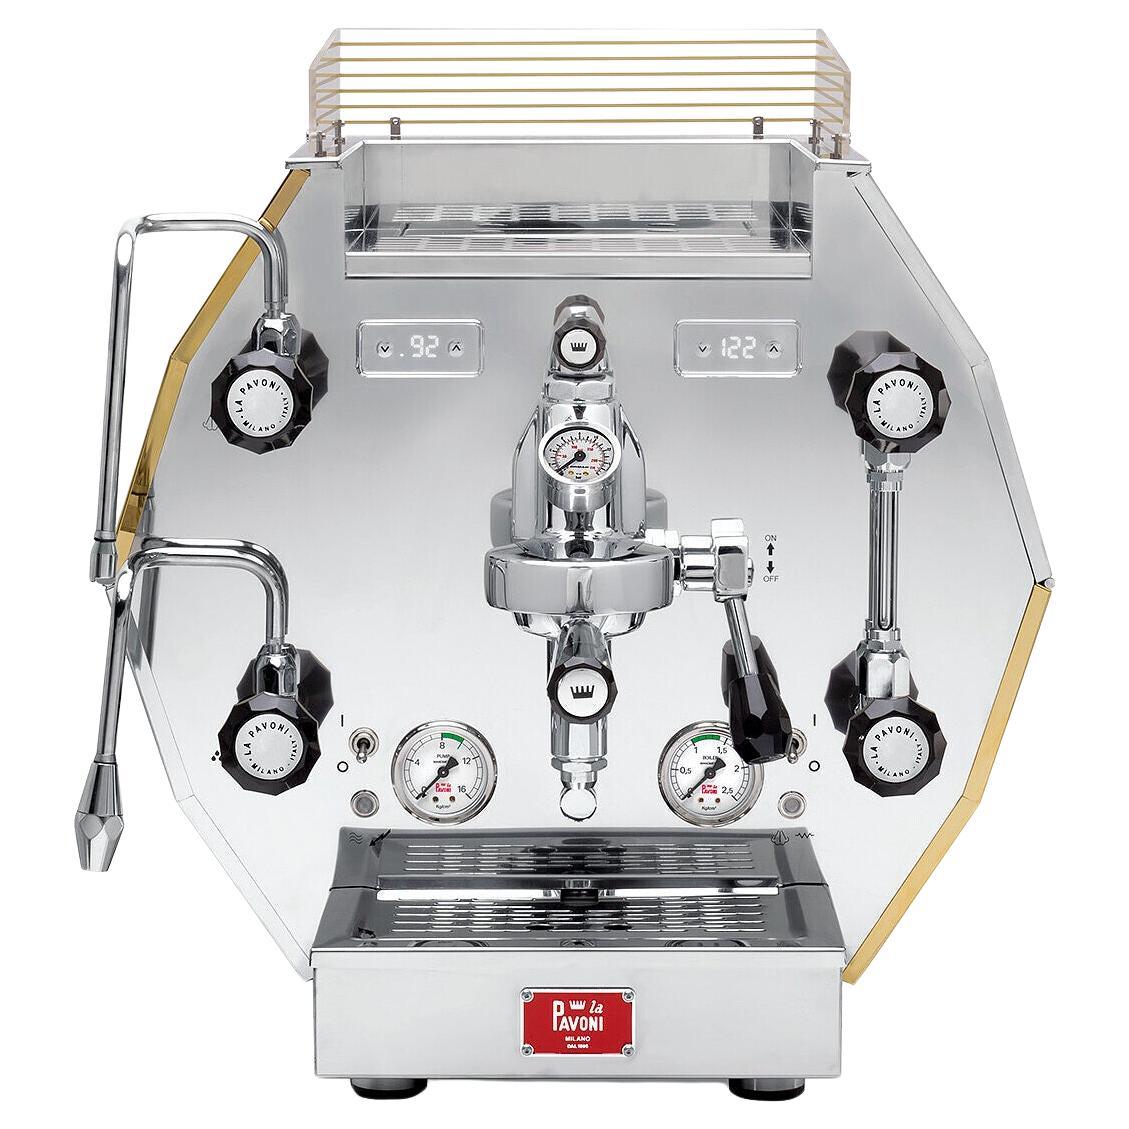 la pavoni espresso machine